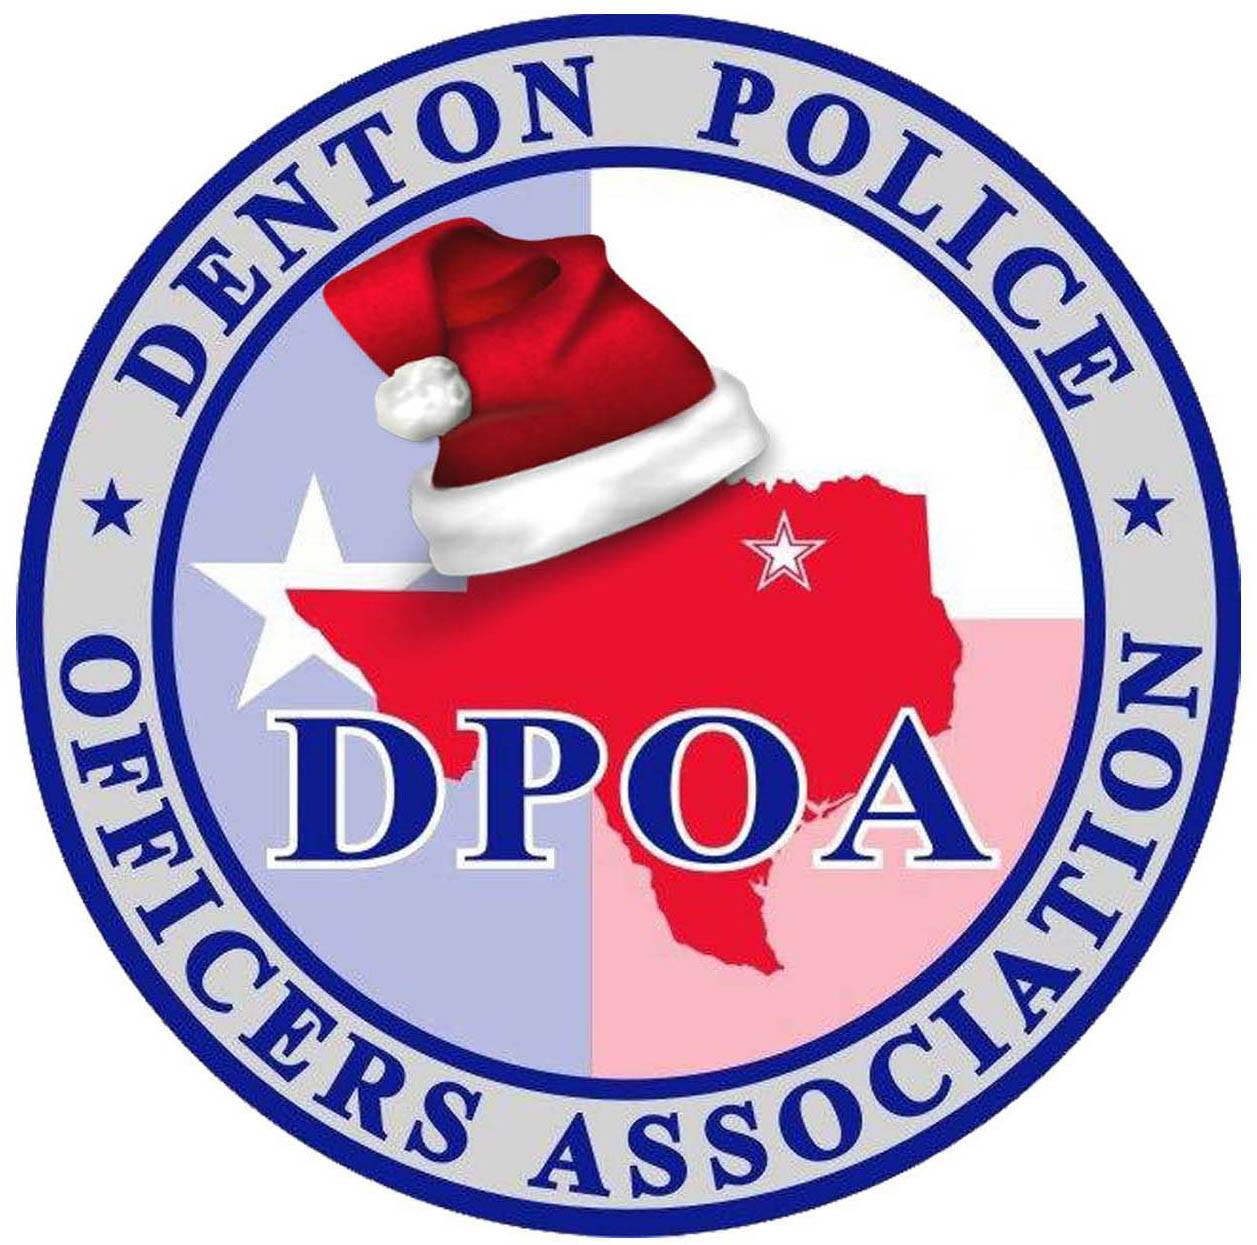 Denton Police Officers Association logo